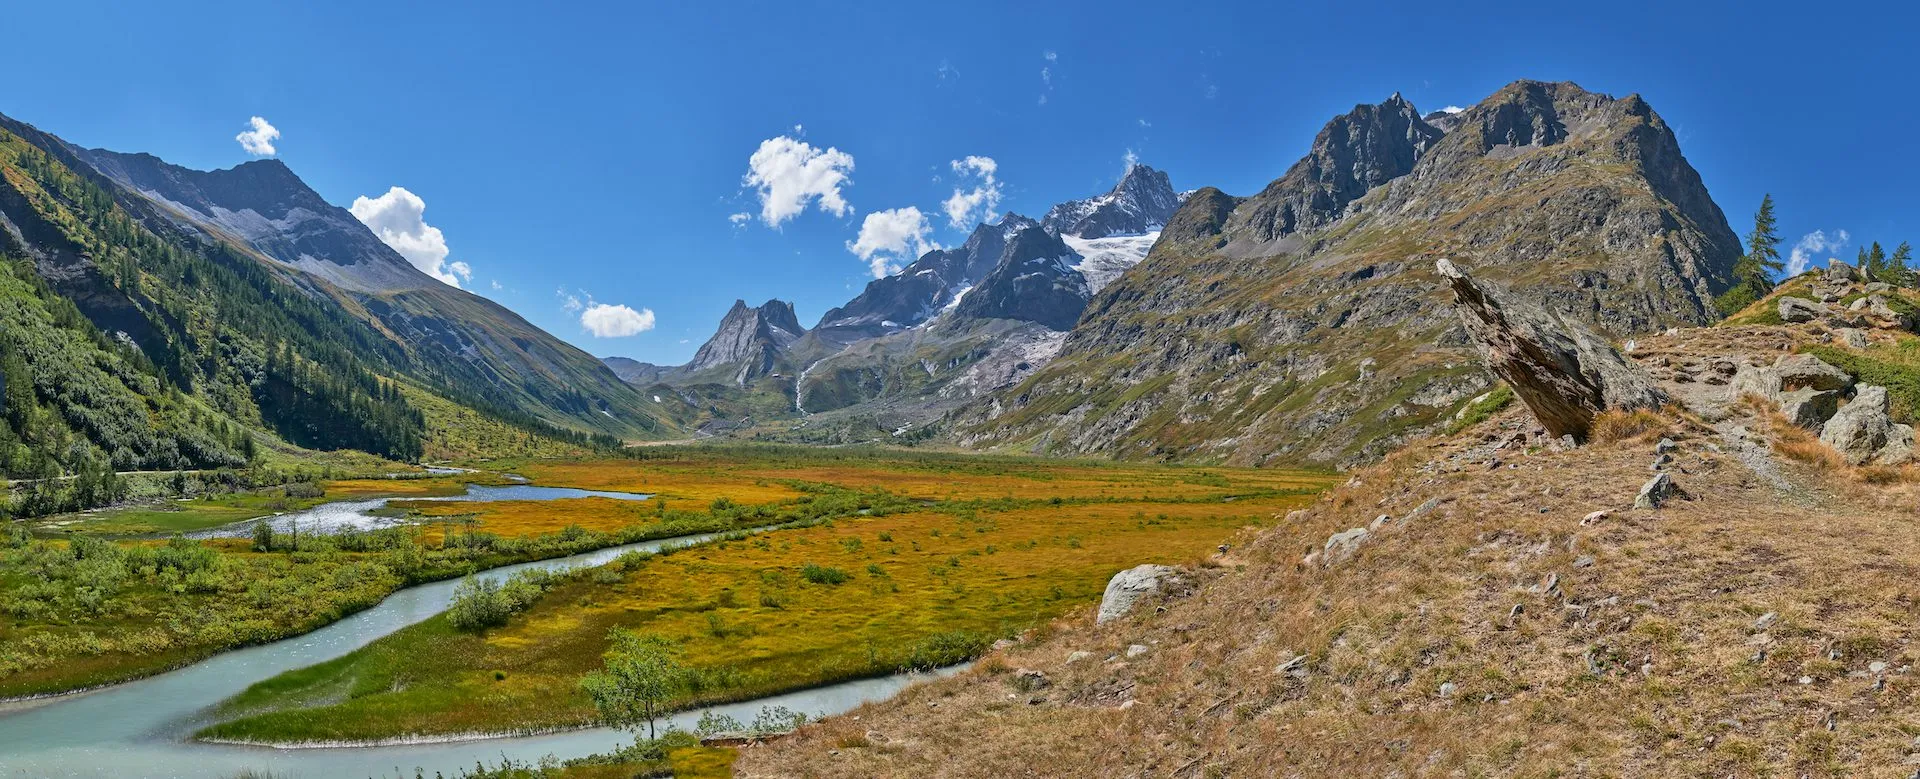 Vista panorámica de los Alpes italianos desde el macizo del Mont Blanc con el valle del Val Veny y el lago Combal.